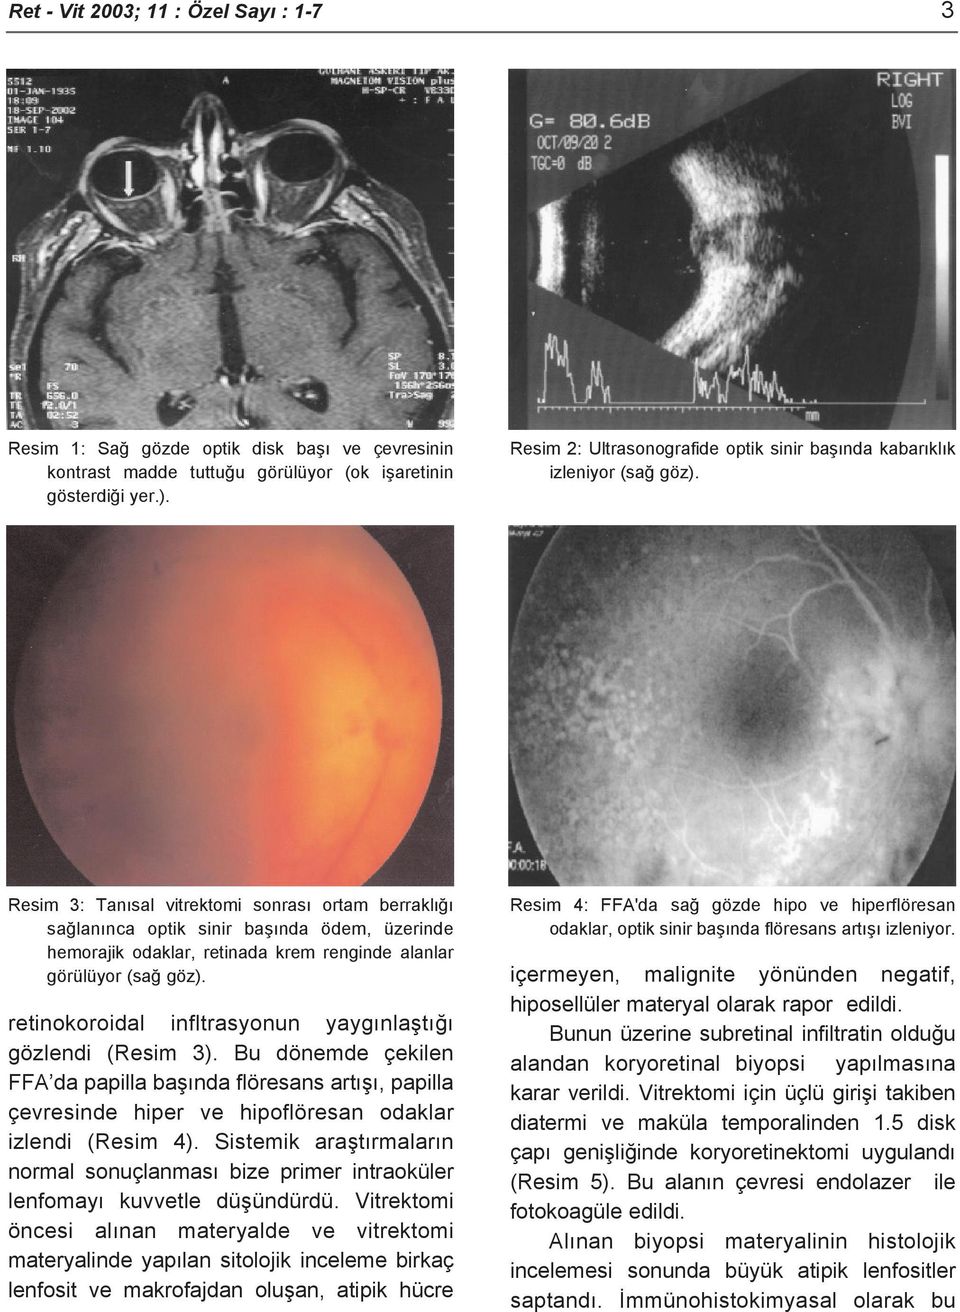 Resim 3: Tanısal vitrektomi sonrası ortam berraklığı sağlanınca optik sinir başında ödem, üzerinde hemorajik odaklar, retinada krem renginde alanlar görülüyor (sağ göz).